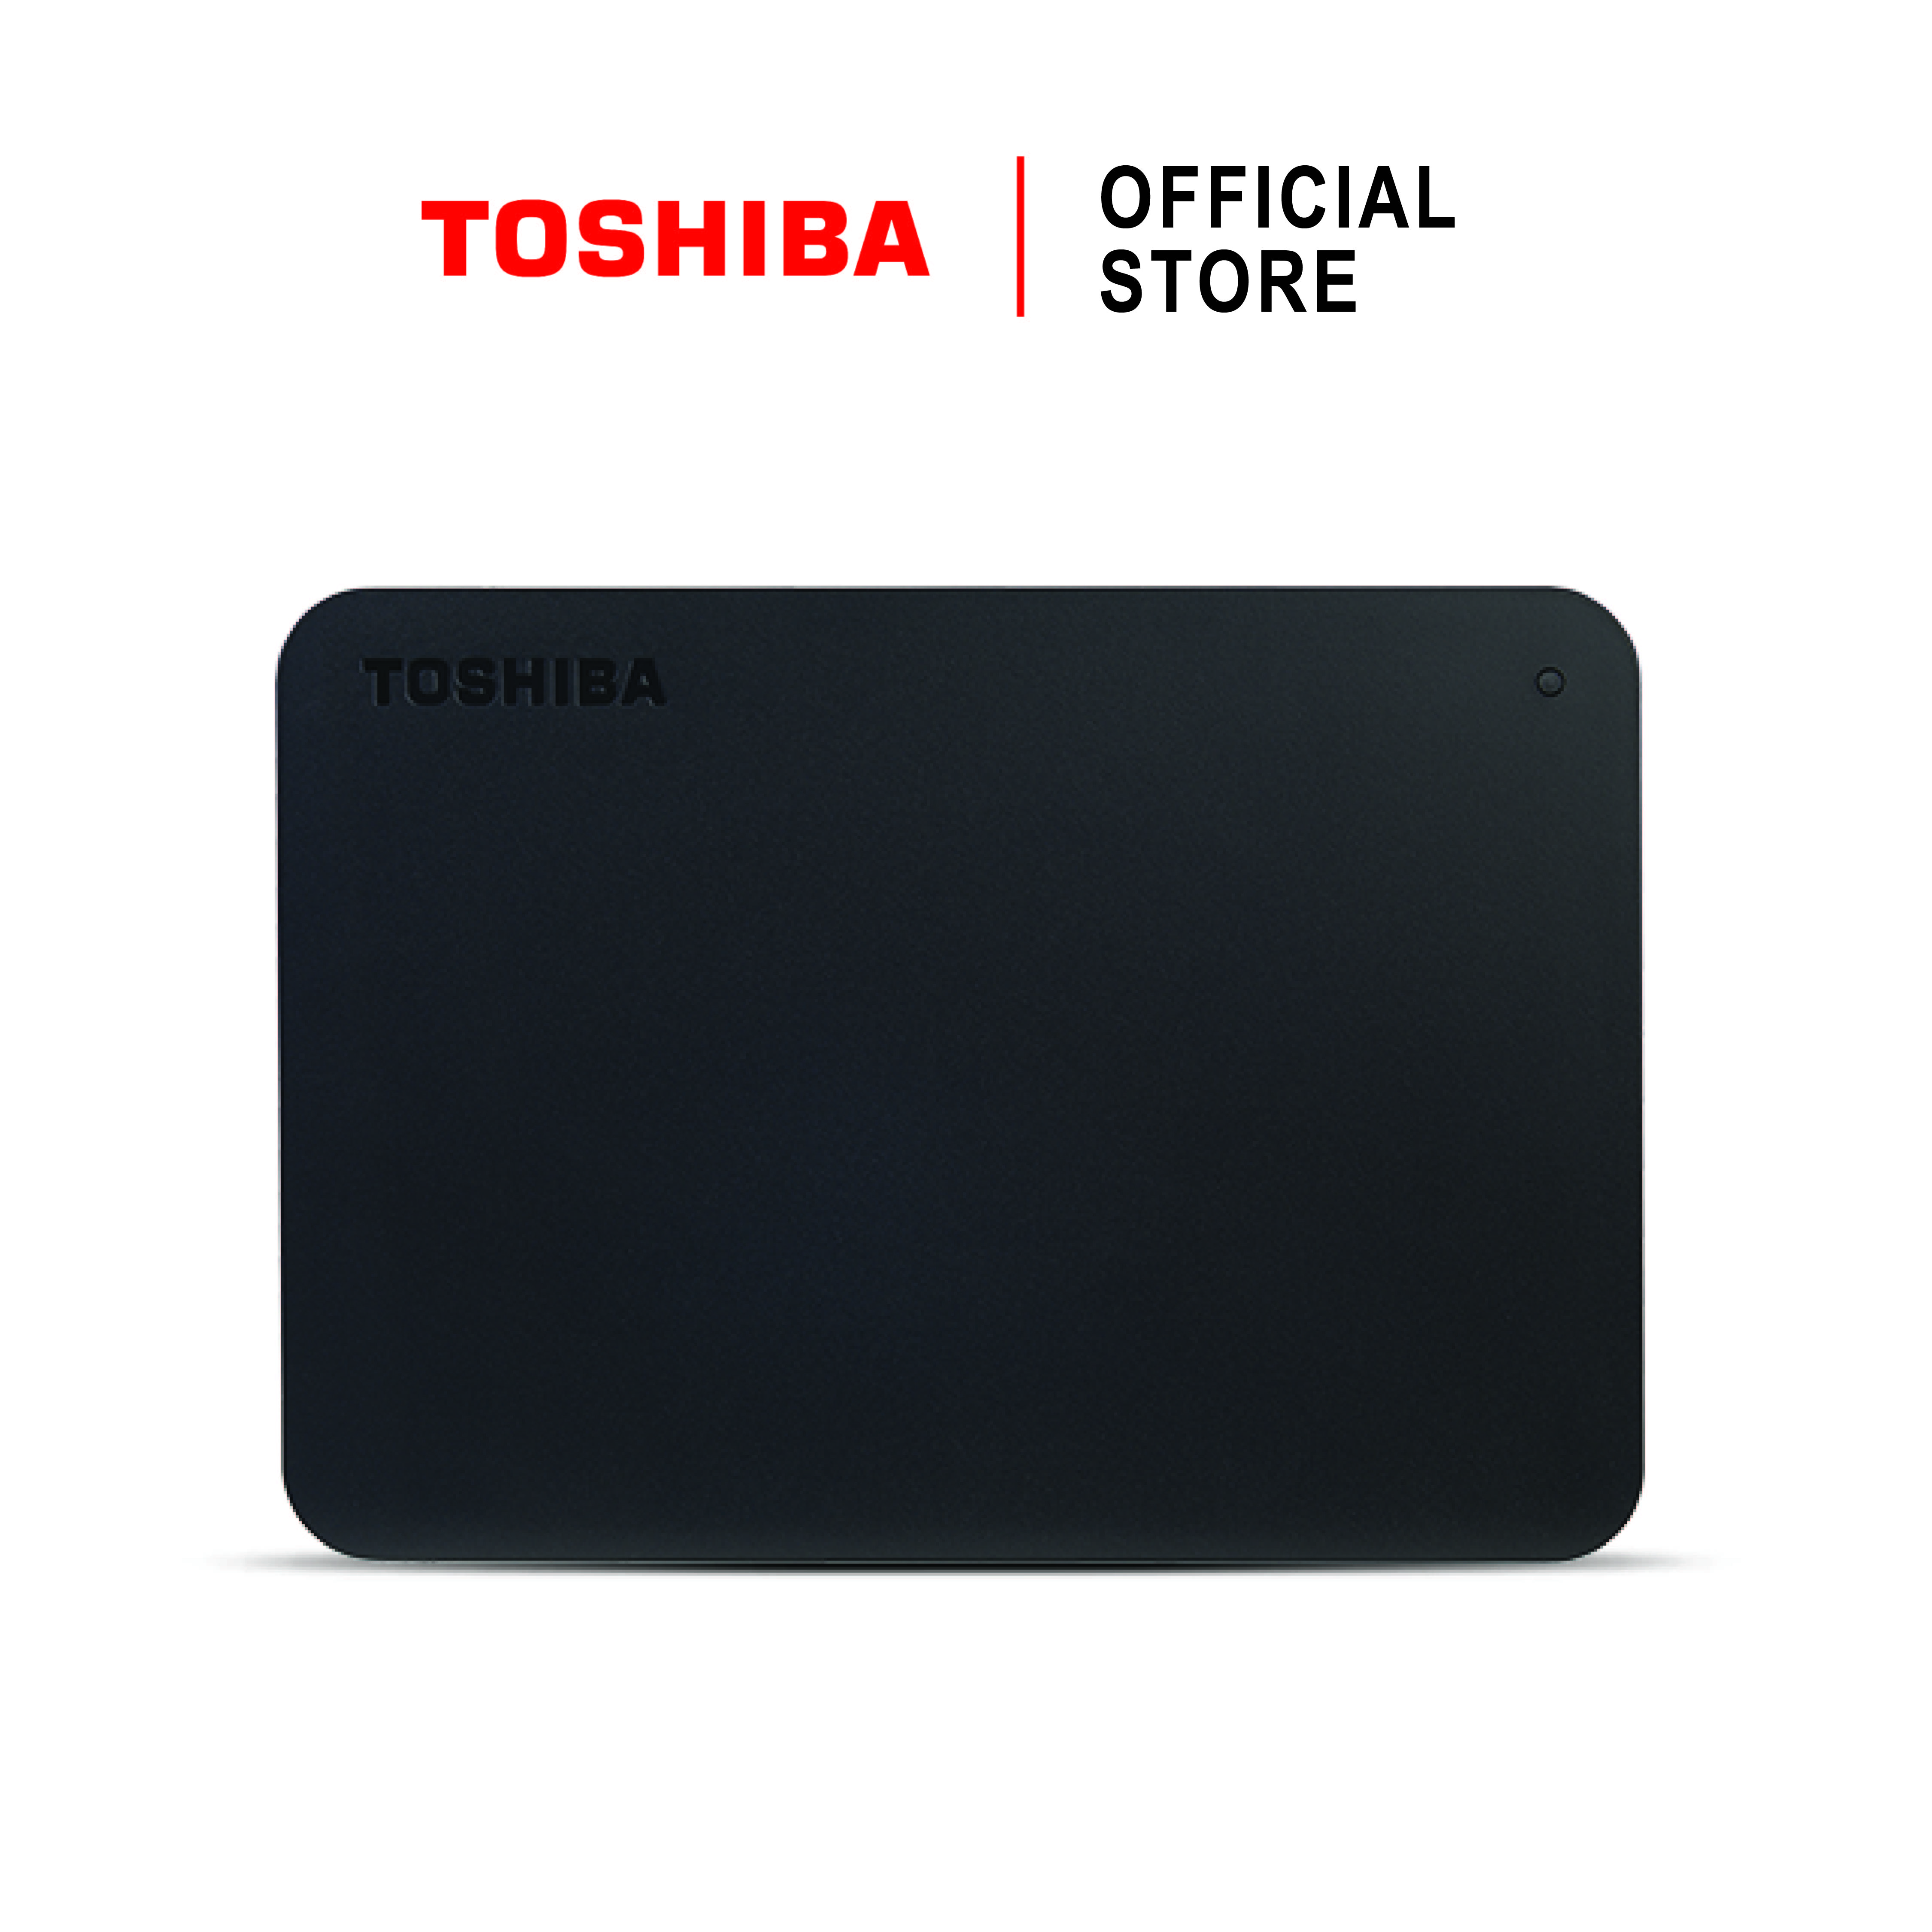 Toshiba External Harddrive (4TB) รุ่น Canvio Basics TypeC External HDD 4TB USB Type-C